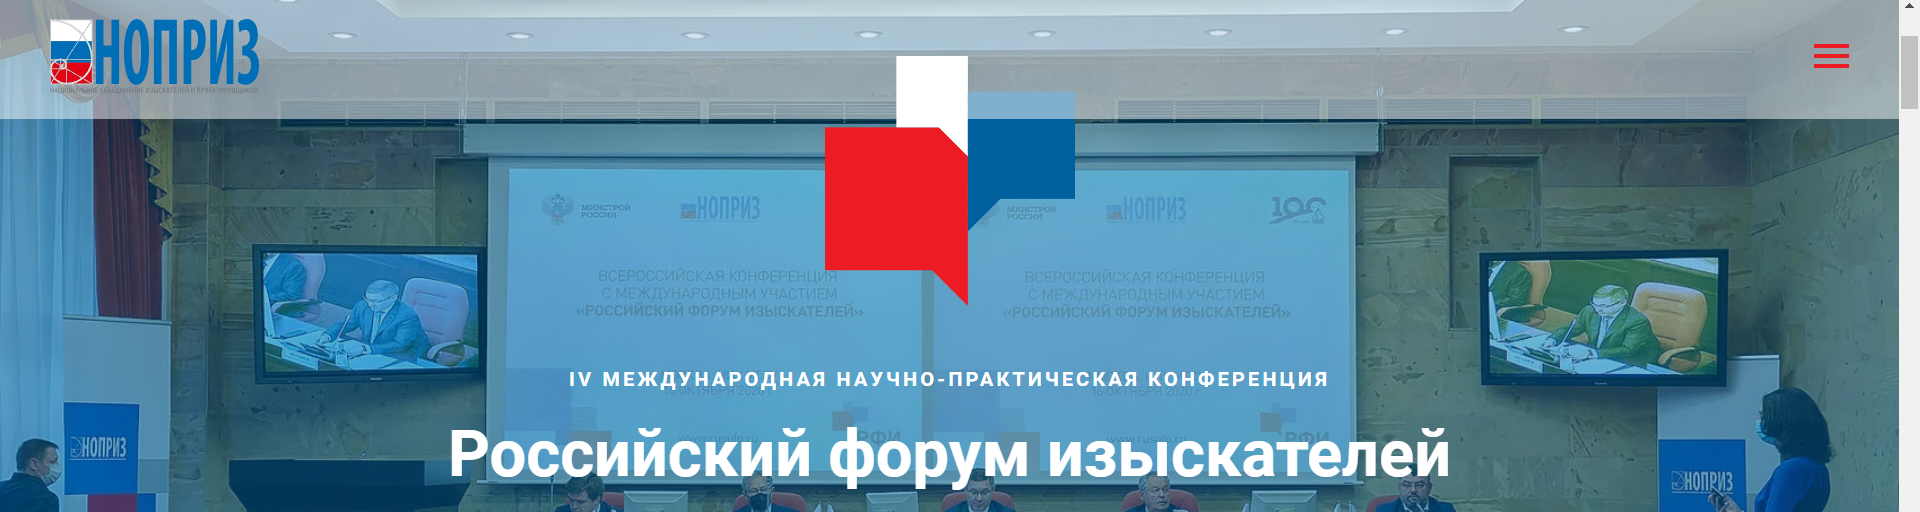 Международная научно-практическая конференция «Российский форум изыскателей»